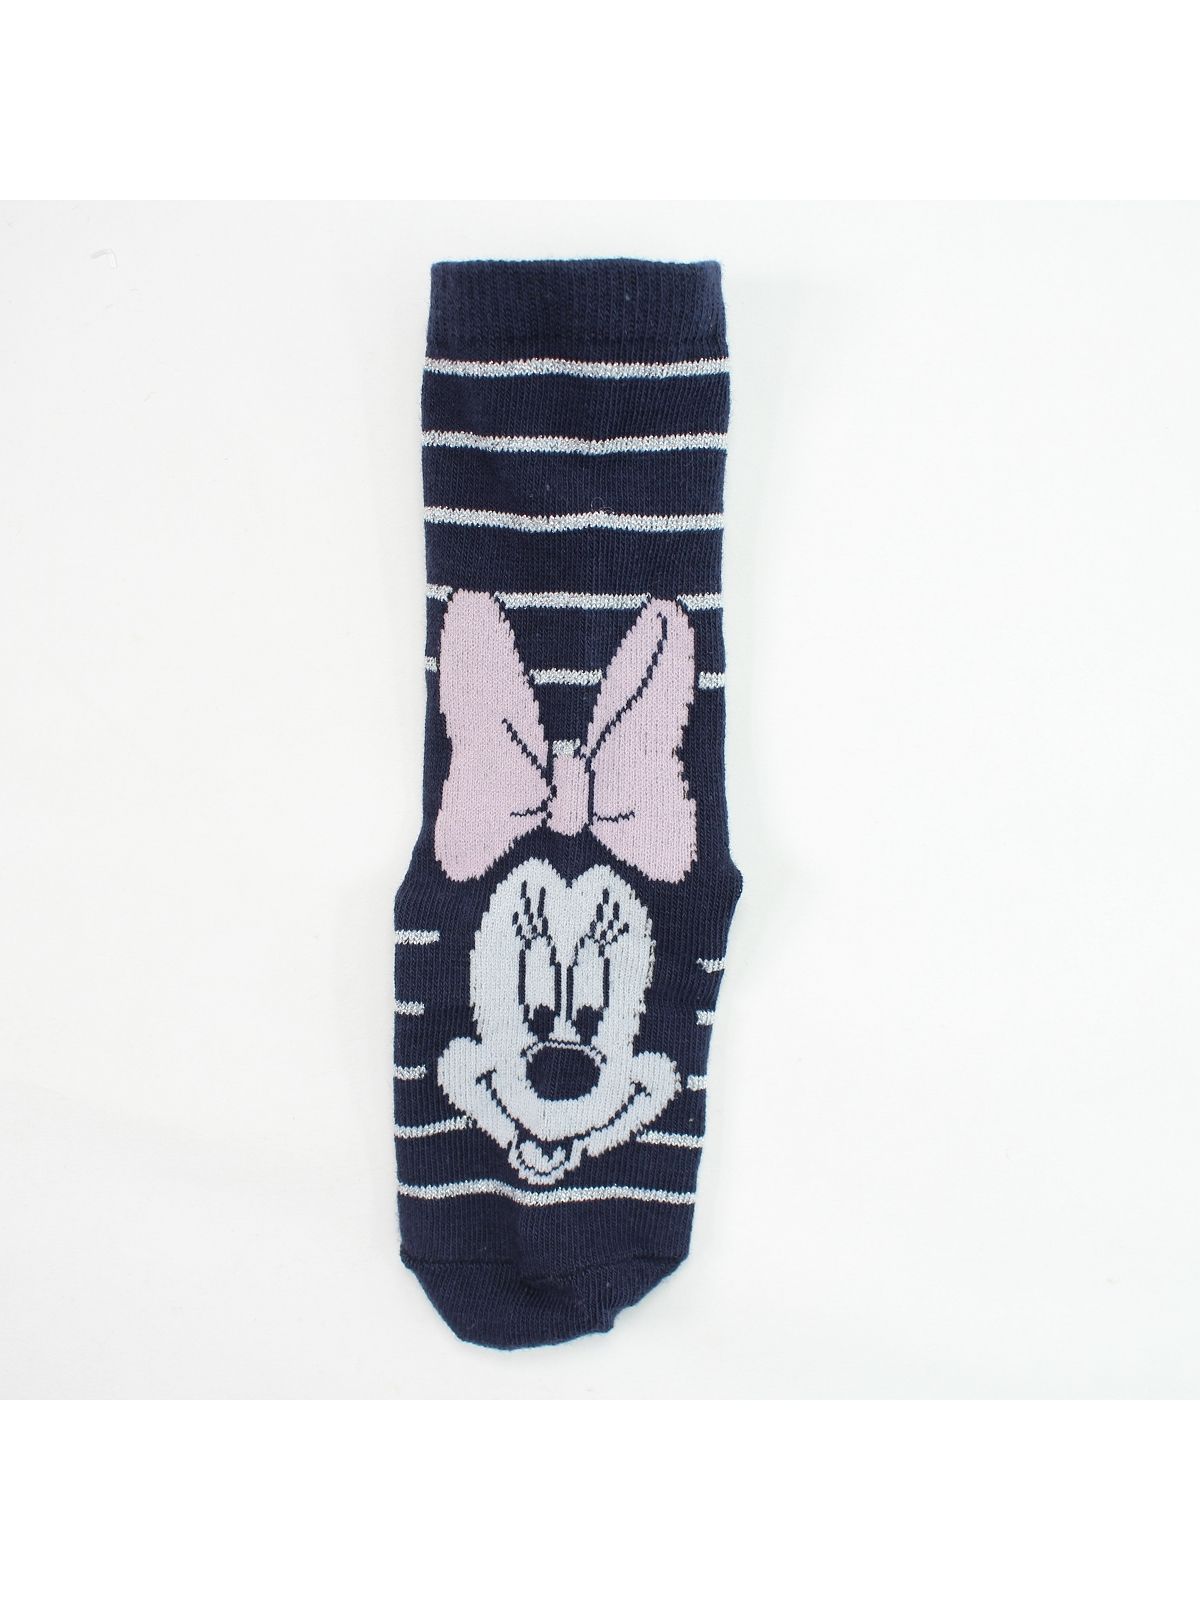 Minnie Pack de 10 pares de calcetines